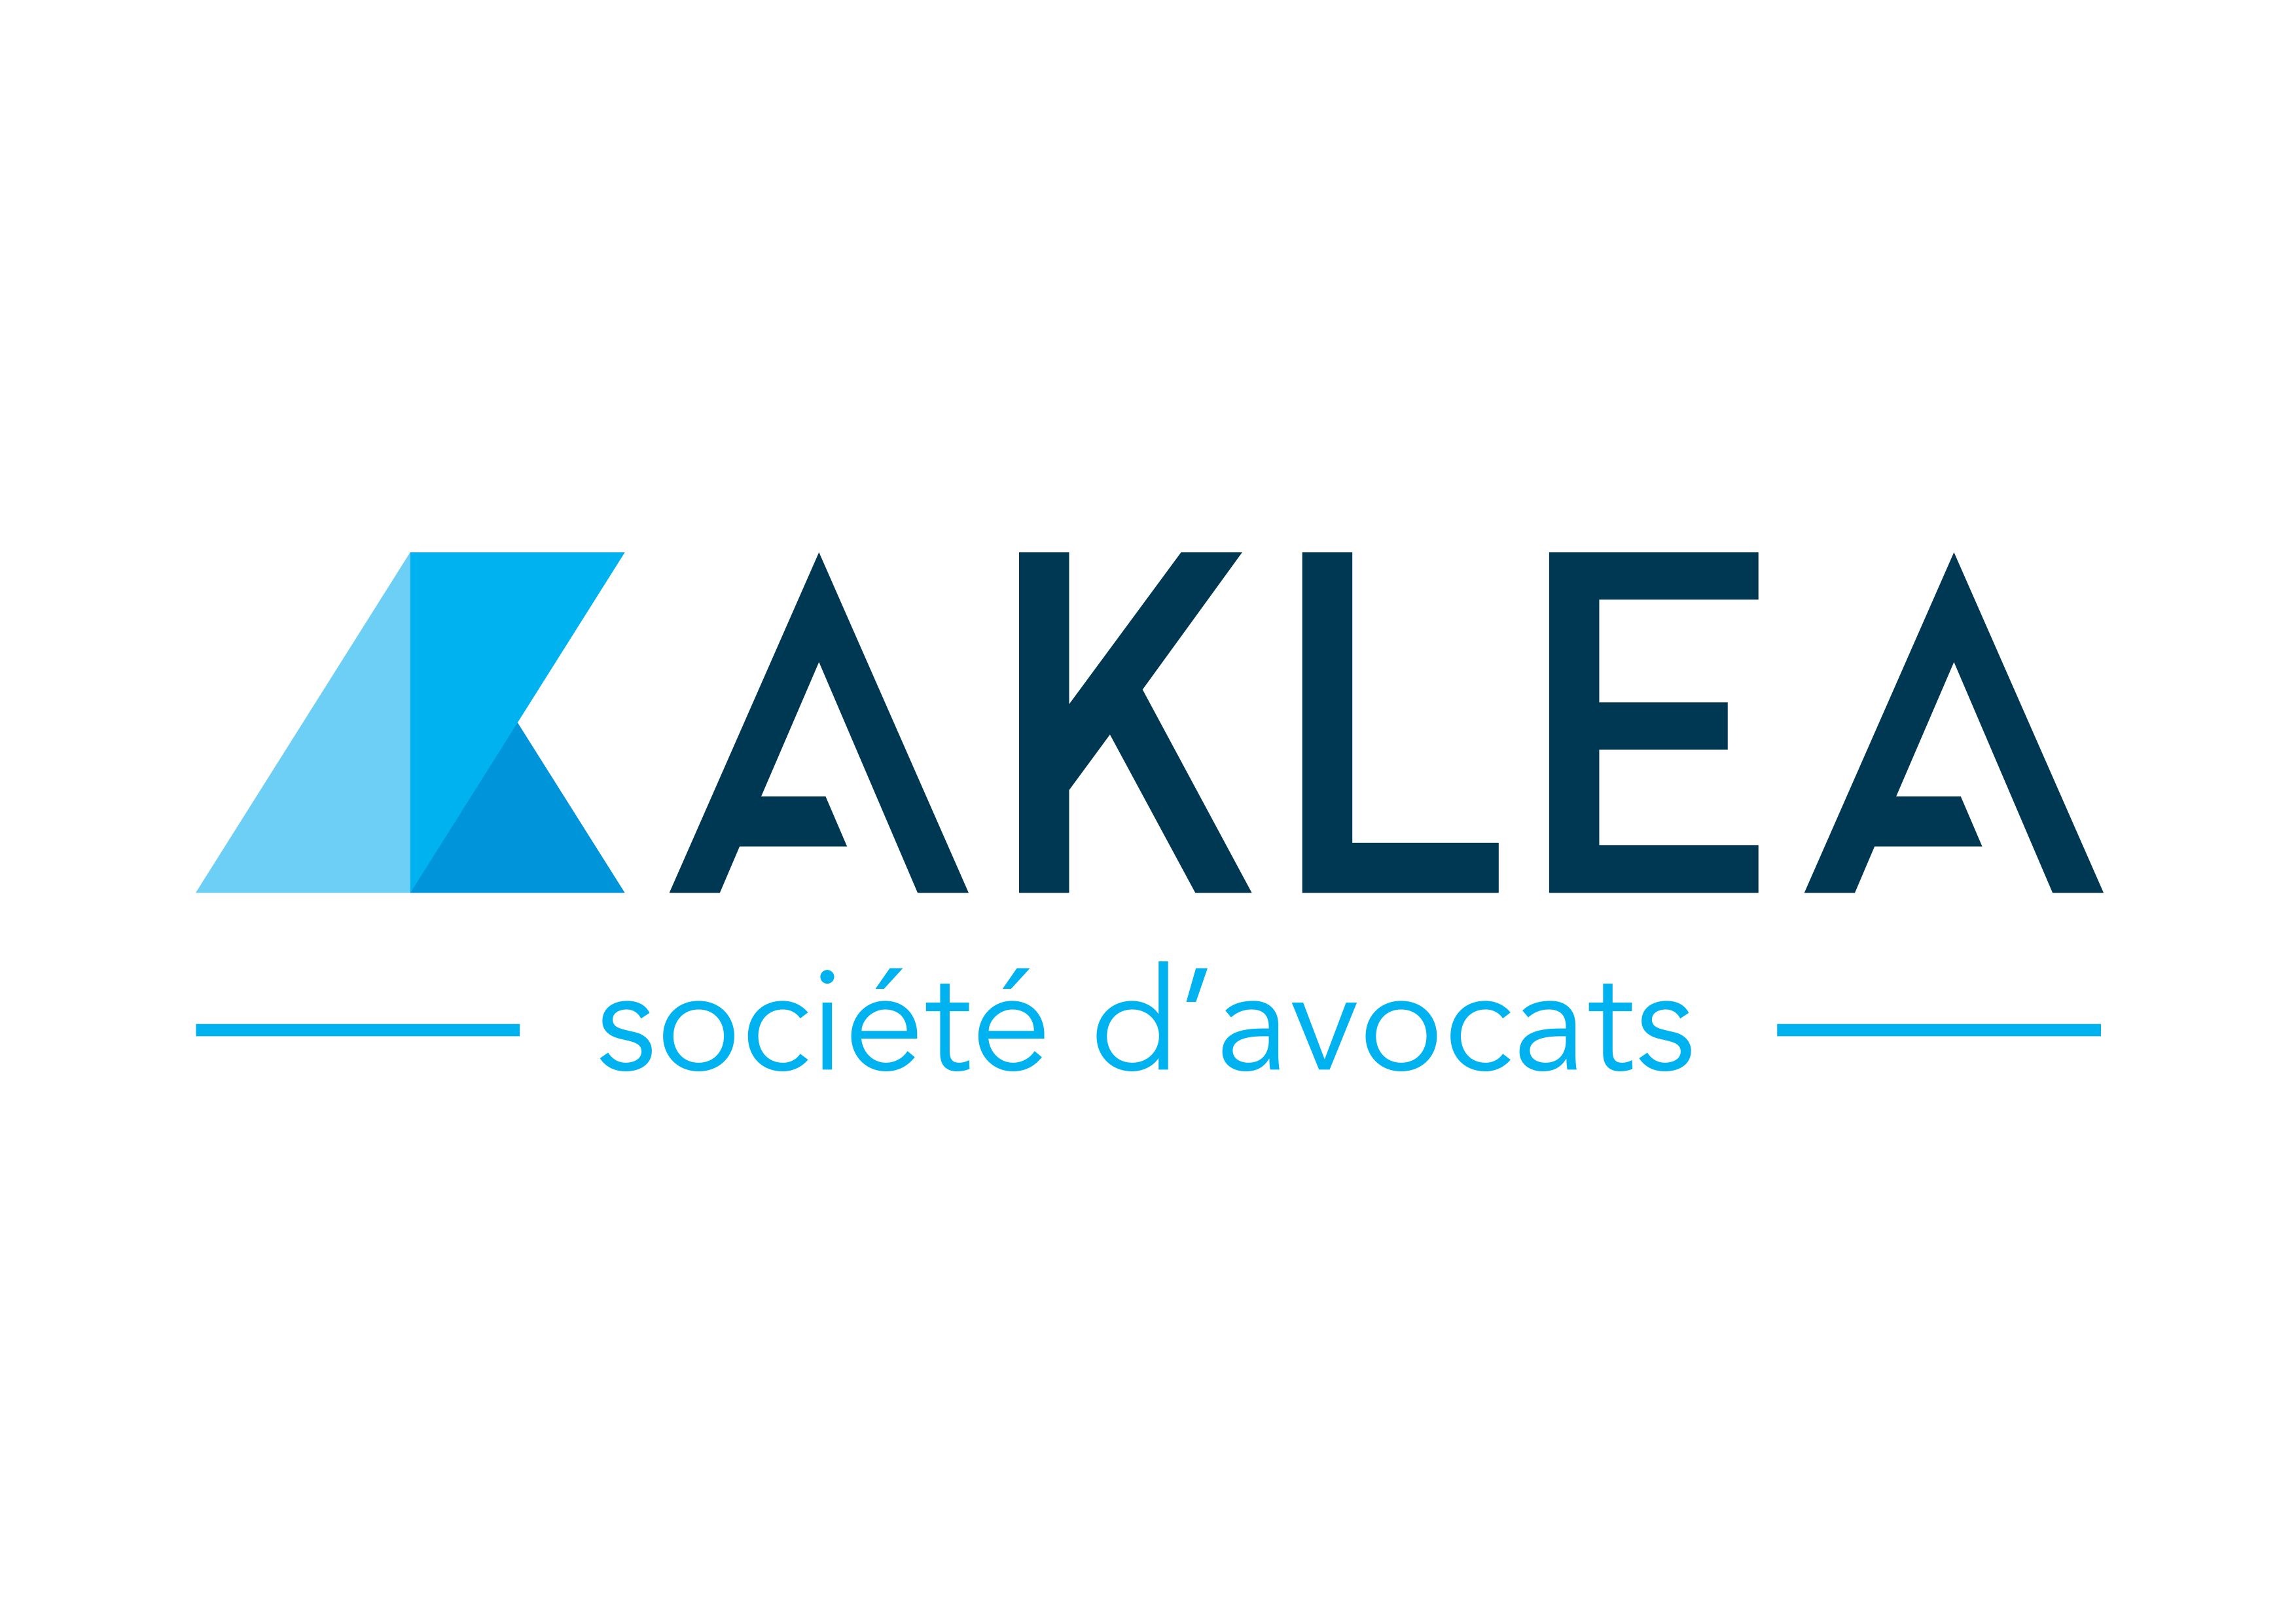 AKLEA, Société d'avocats